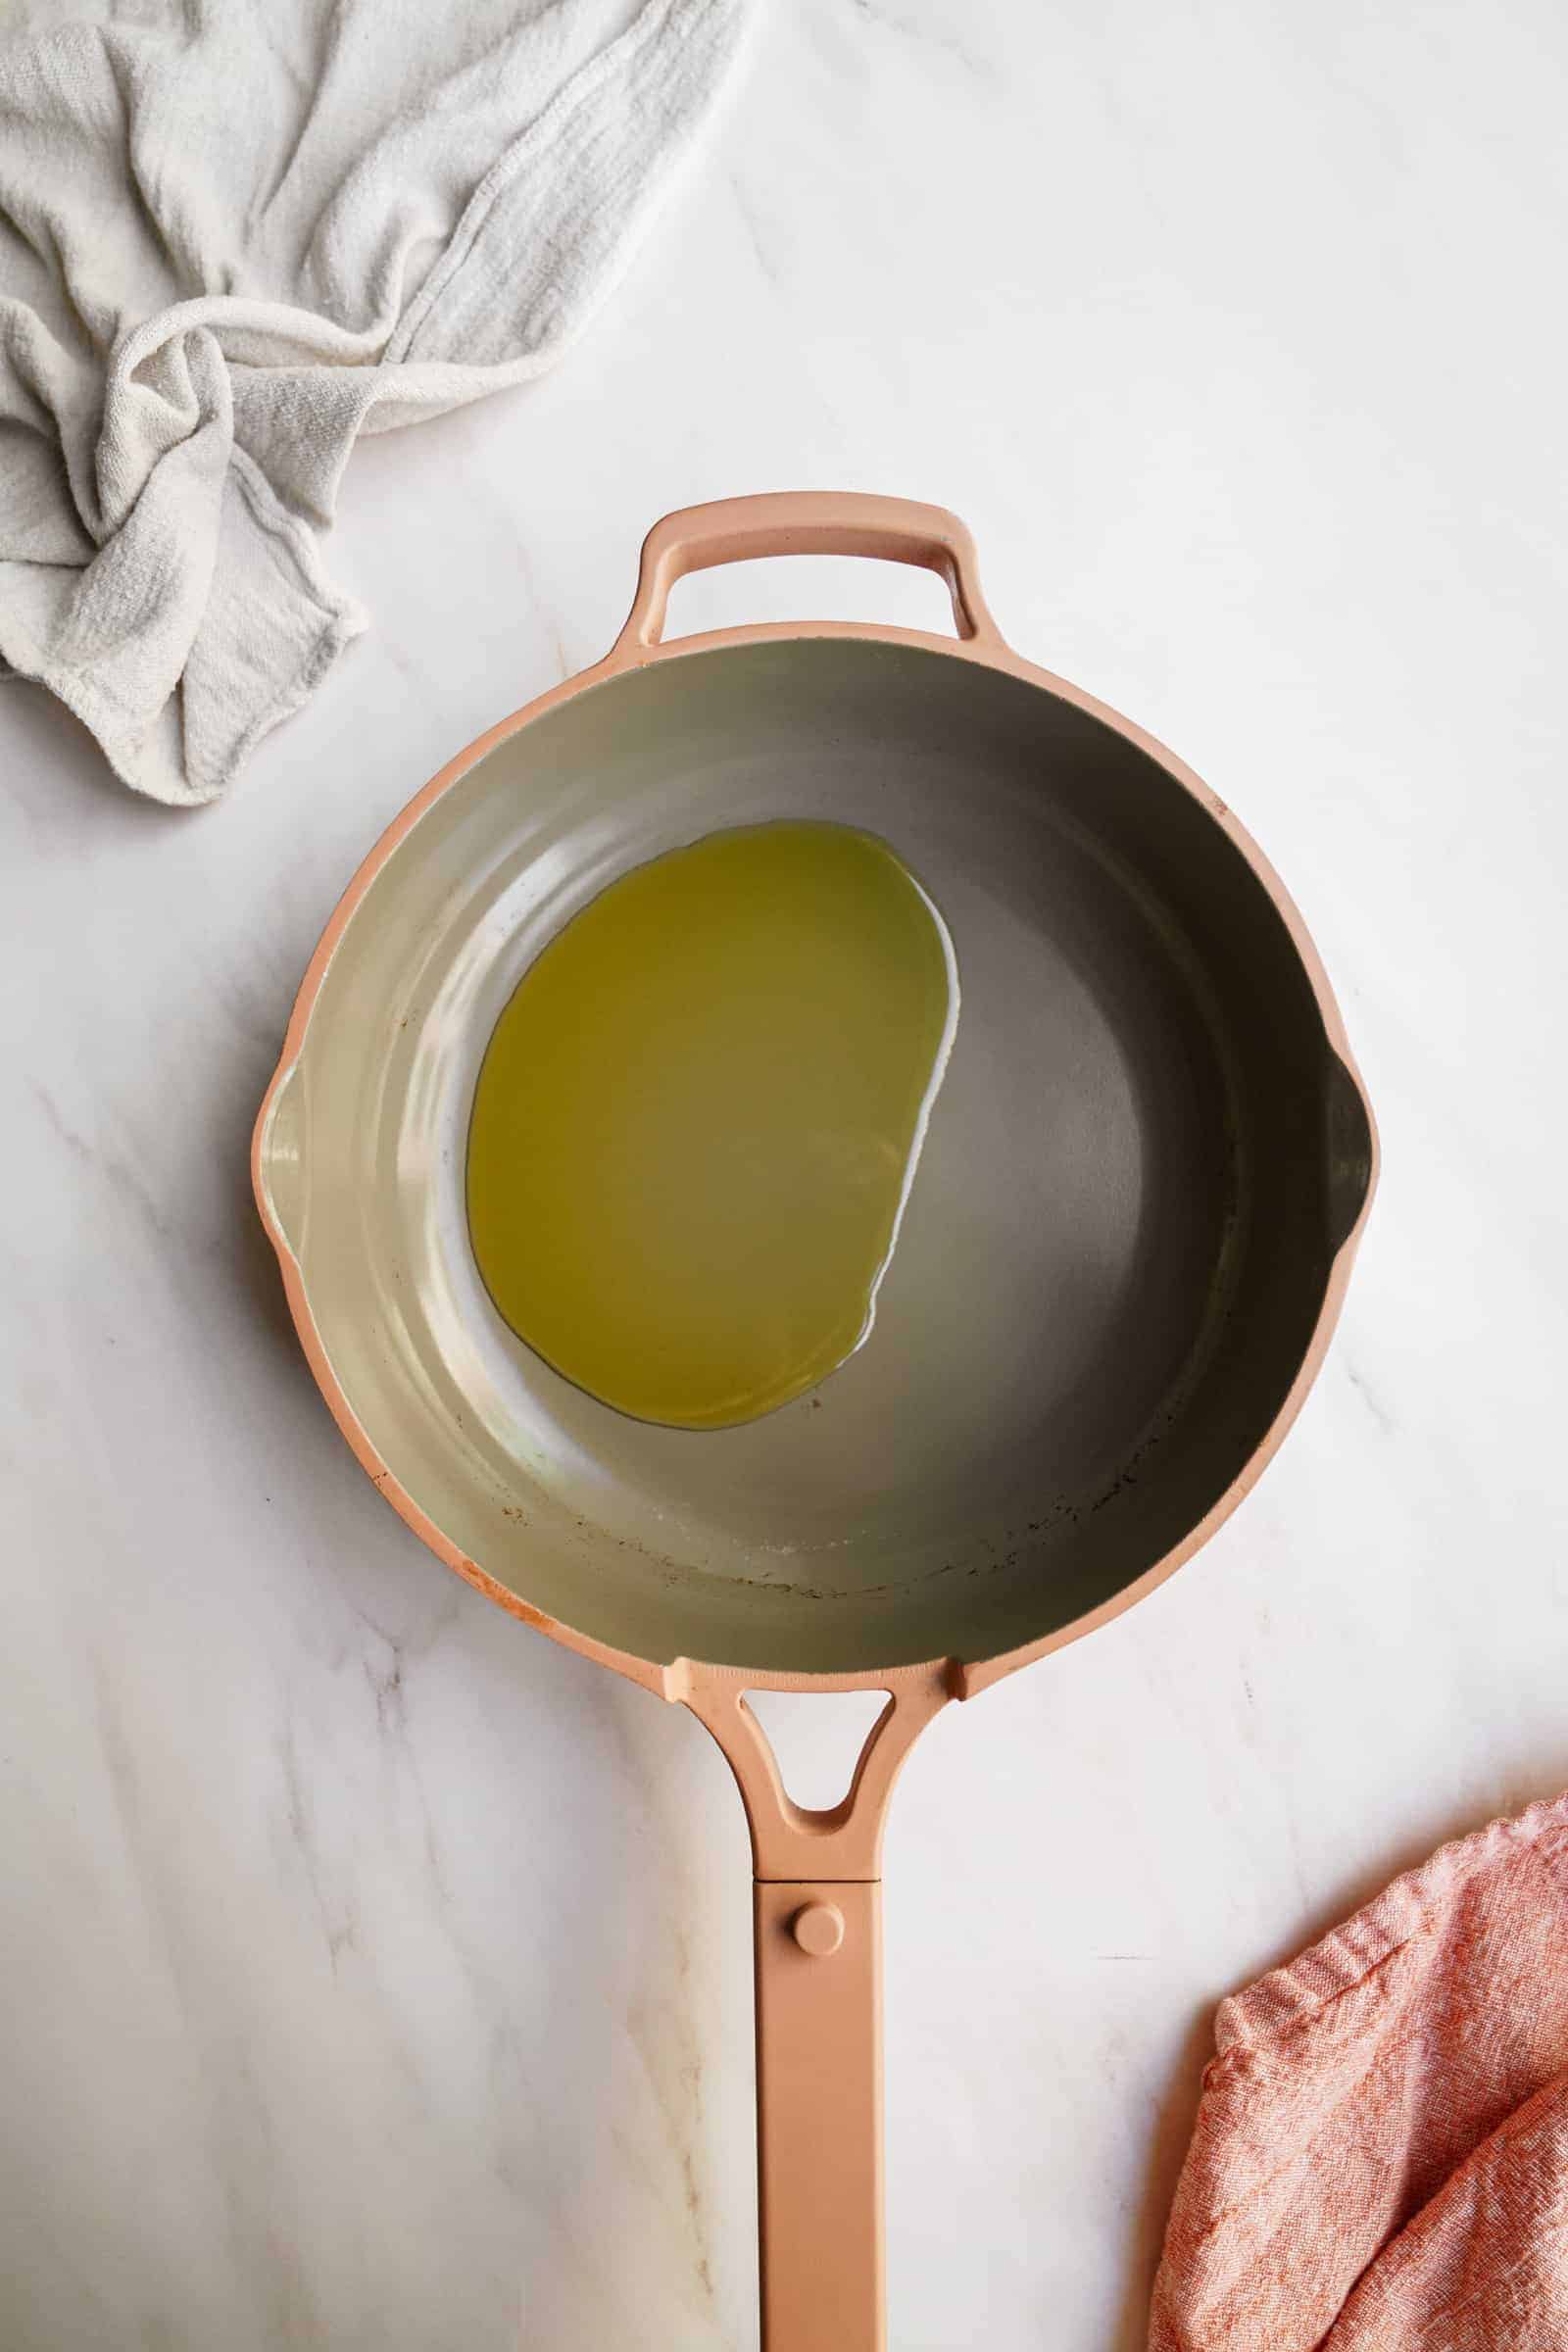 Olive oil in pan for vegan pasta recipes